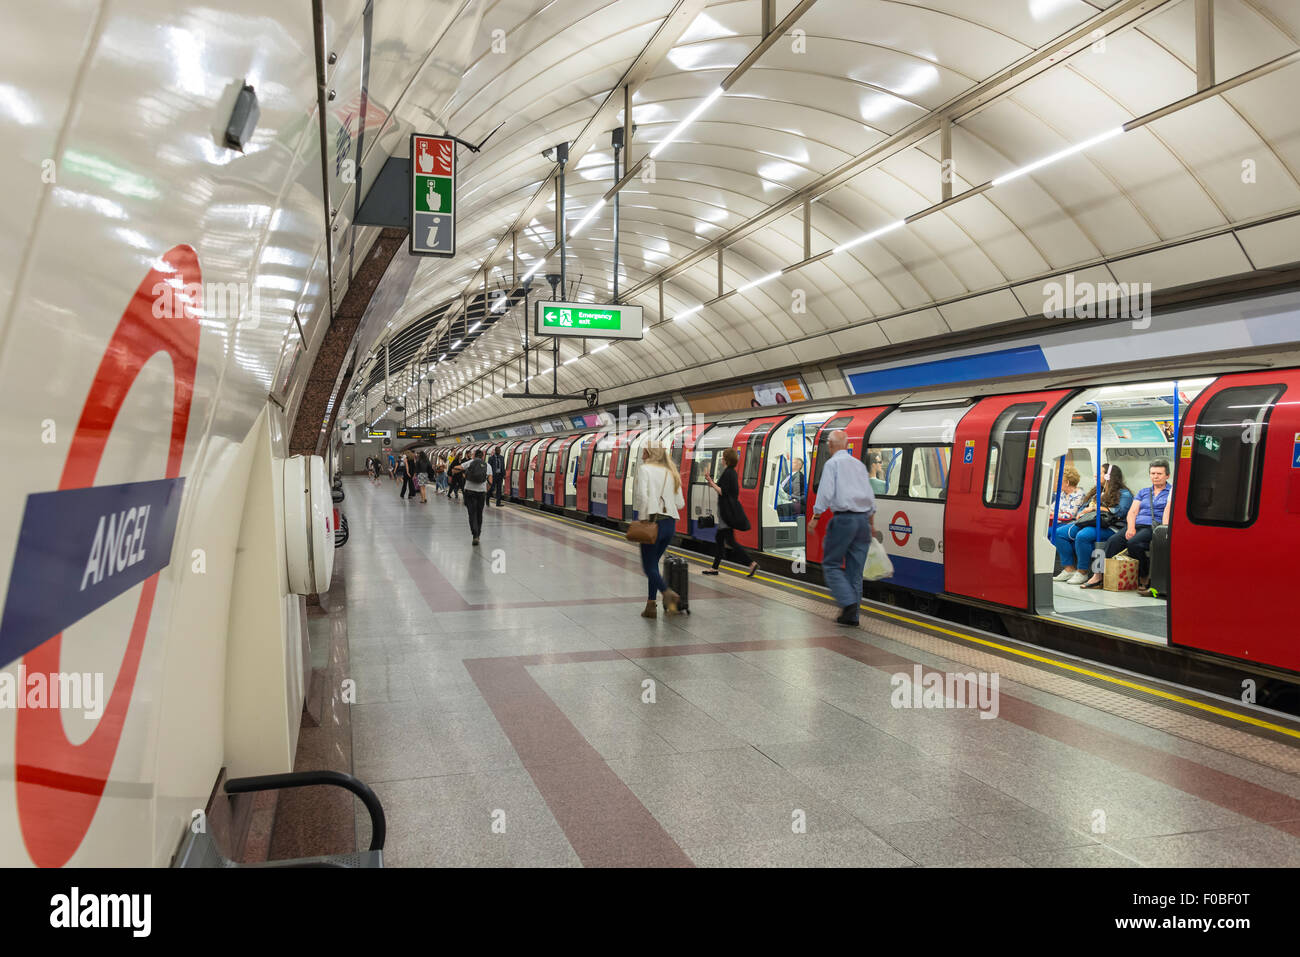 Plate-forme de la station de métro Angel, Islington, London Borough of Islington, Londres, Angleterre, Royaume-Uni Banque D'Images